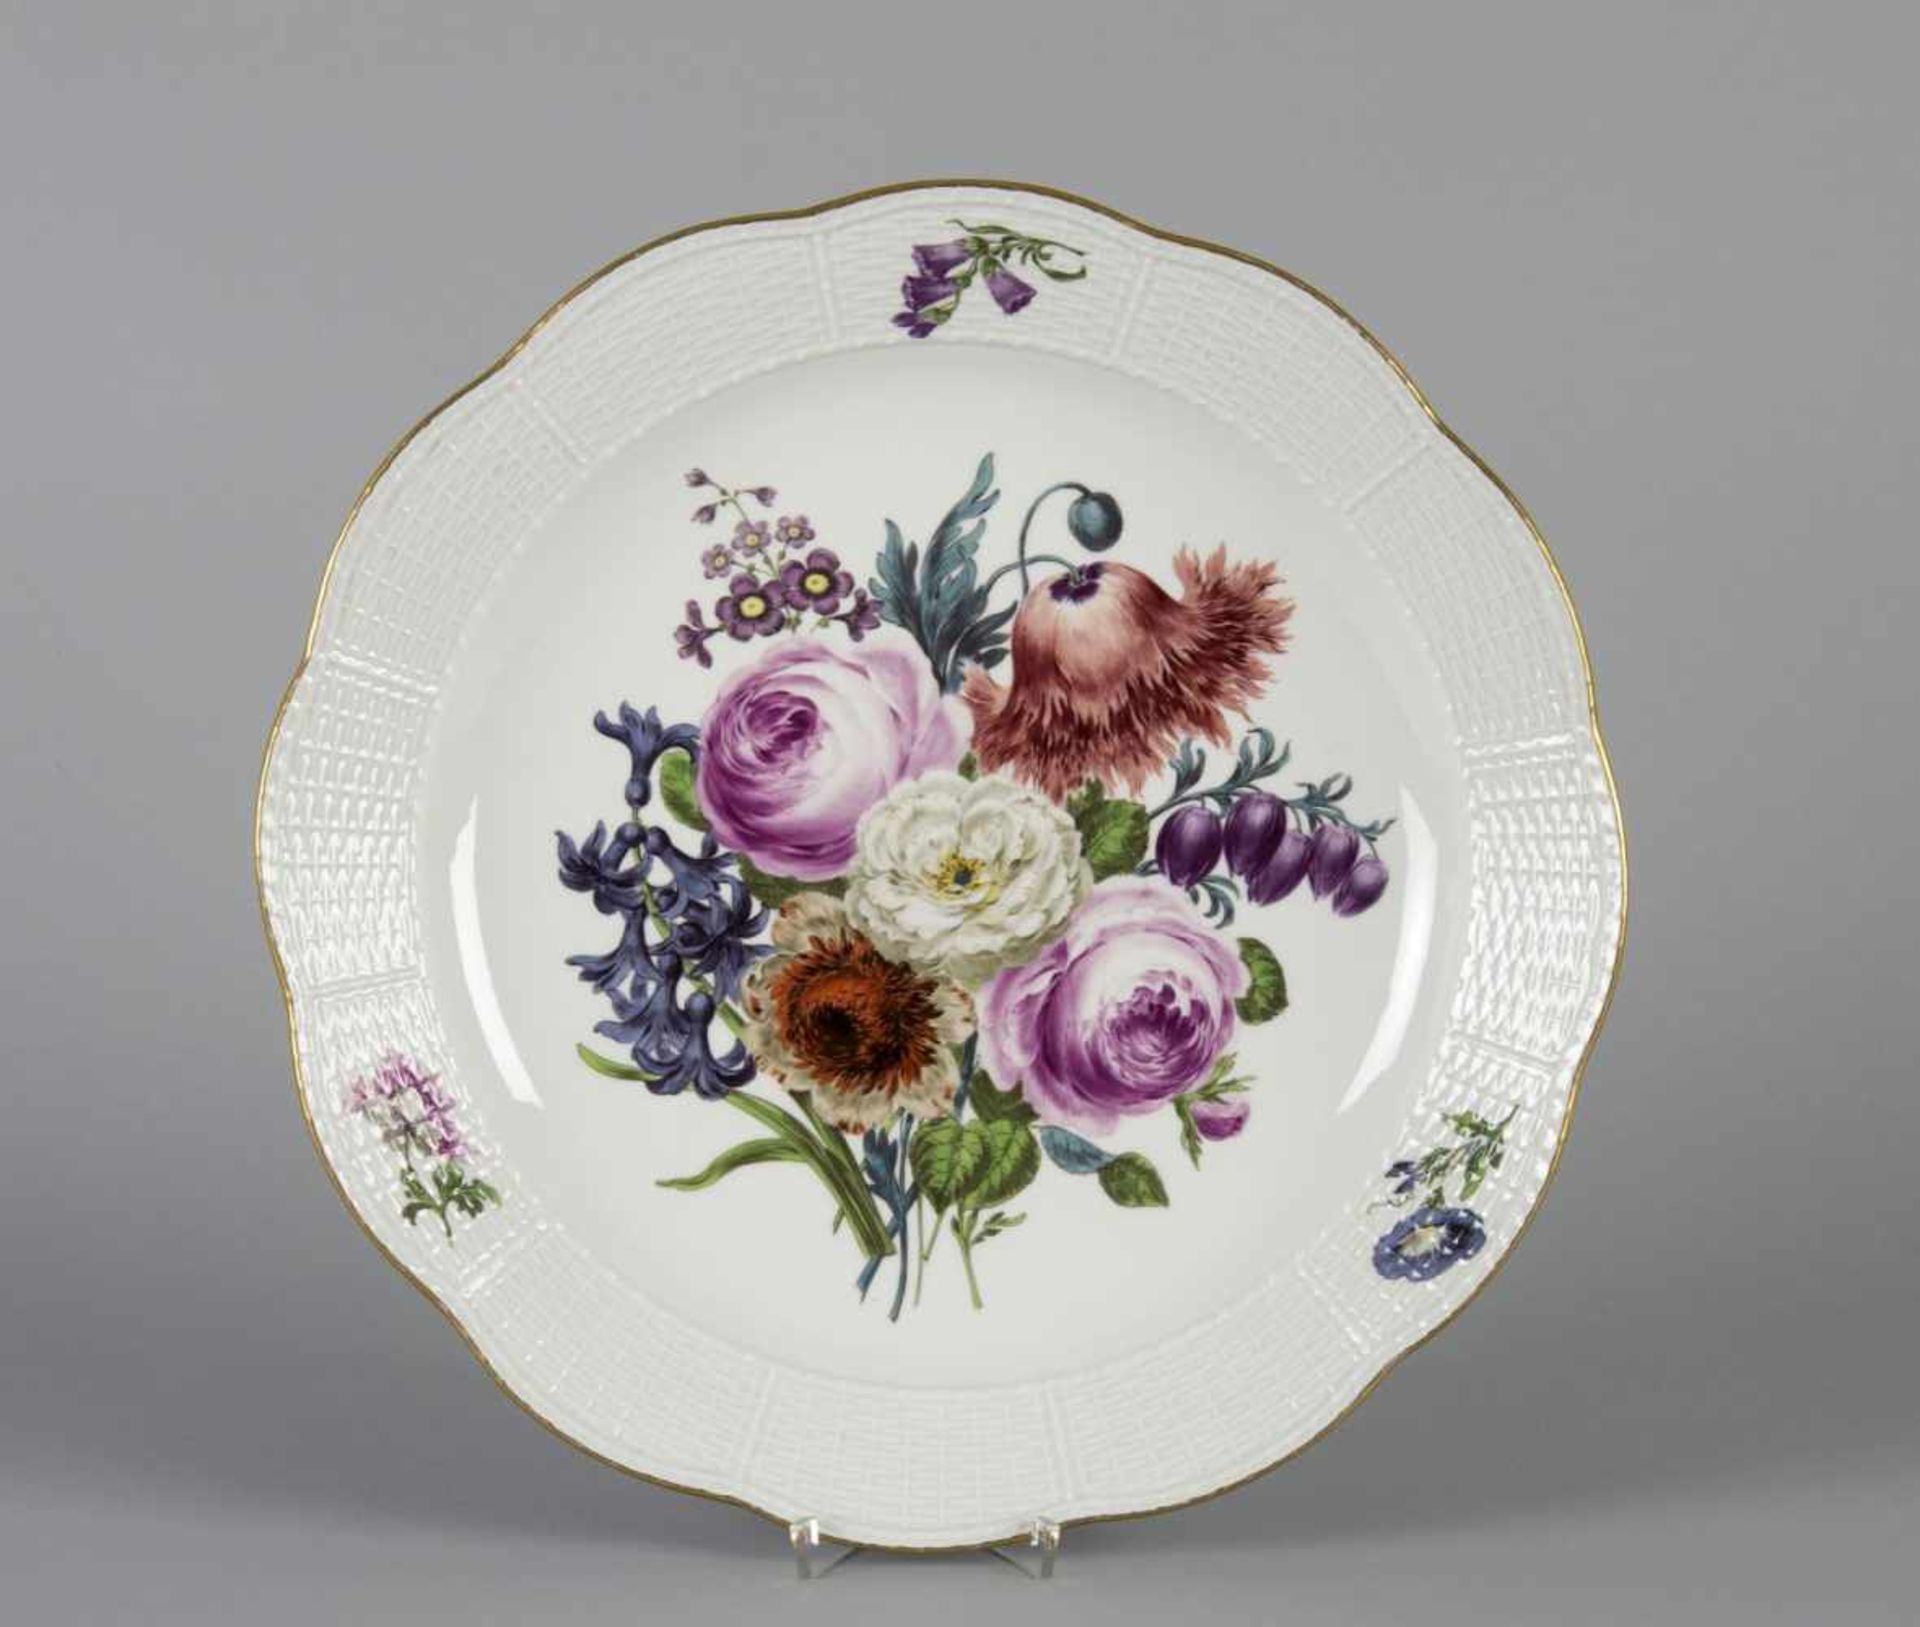 Große runde PlatteForm: Korb. Polychrome florale Bemalung. Goldrand. Marke: Meissen, 1910. D. 40